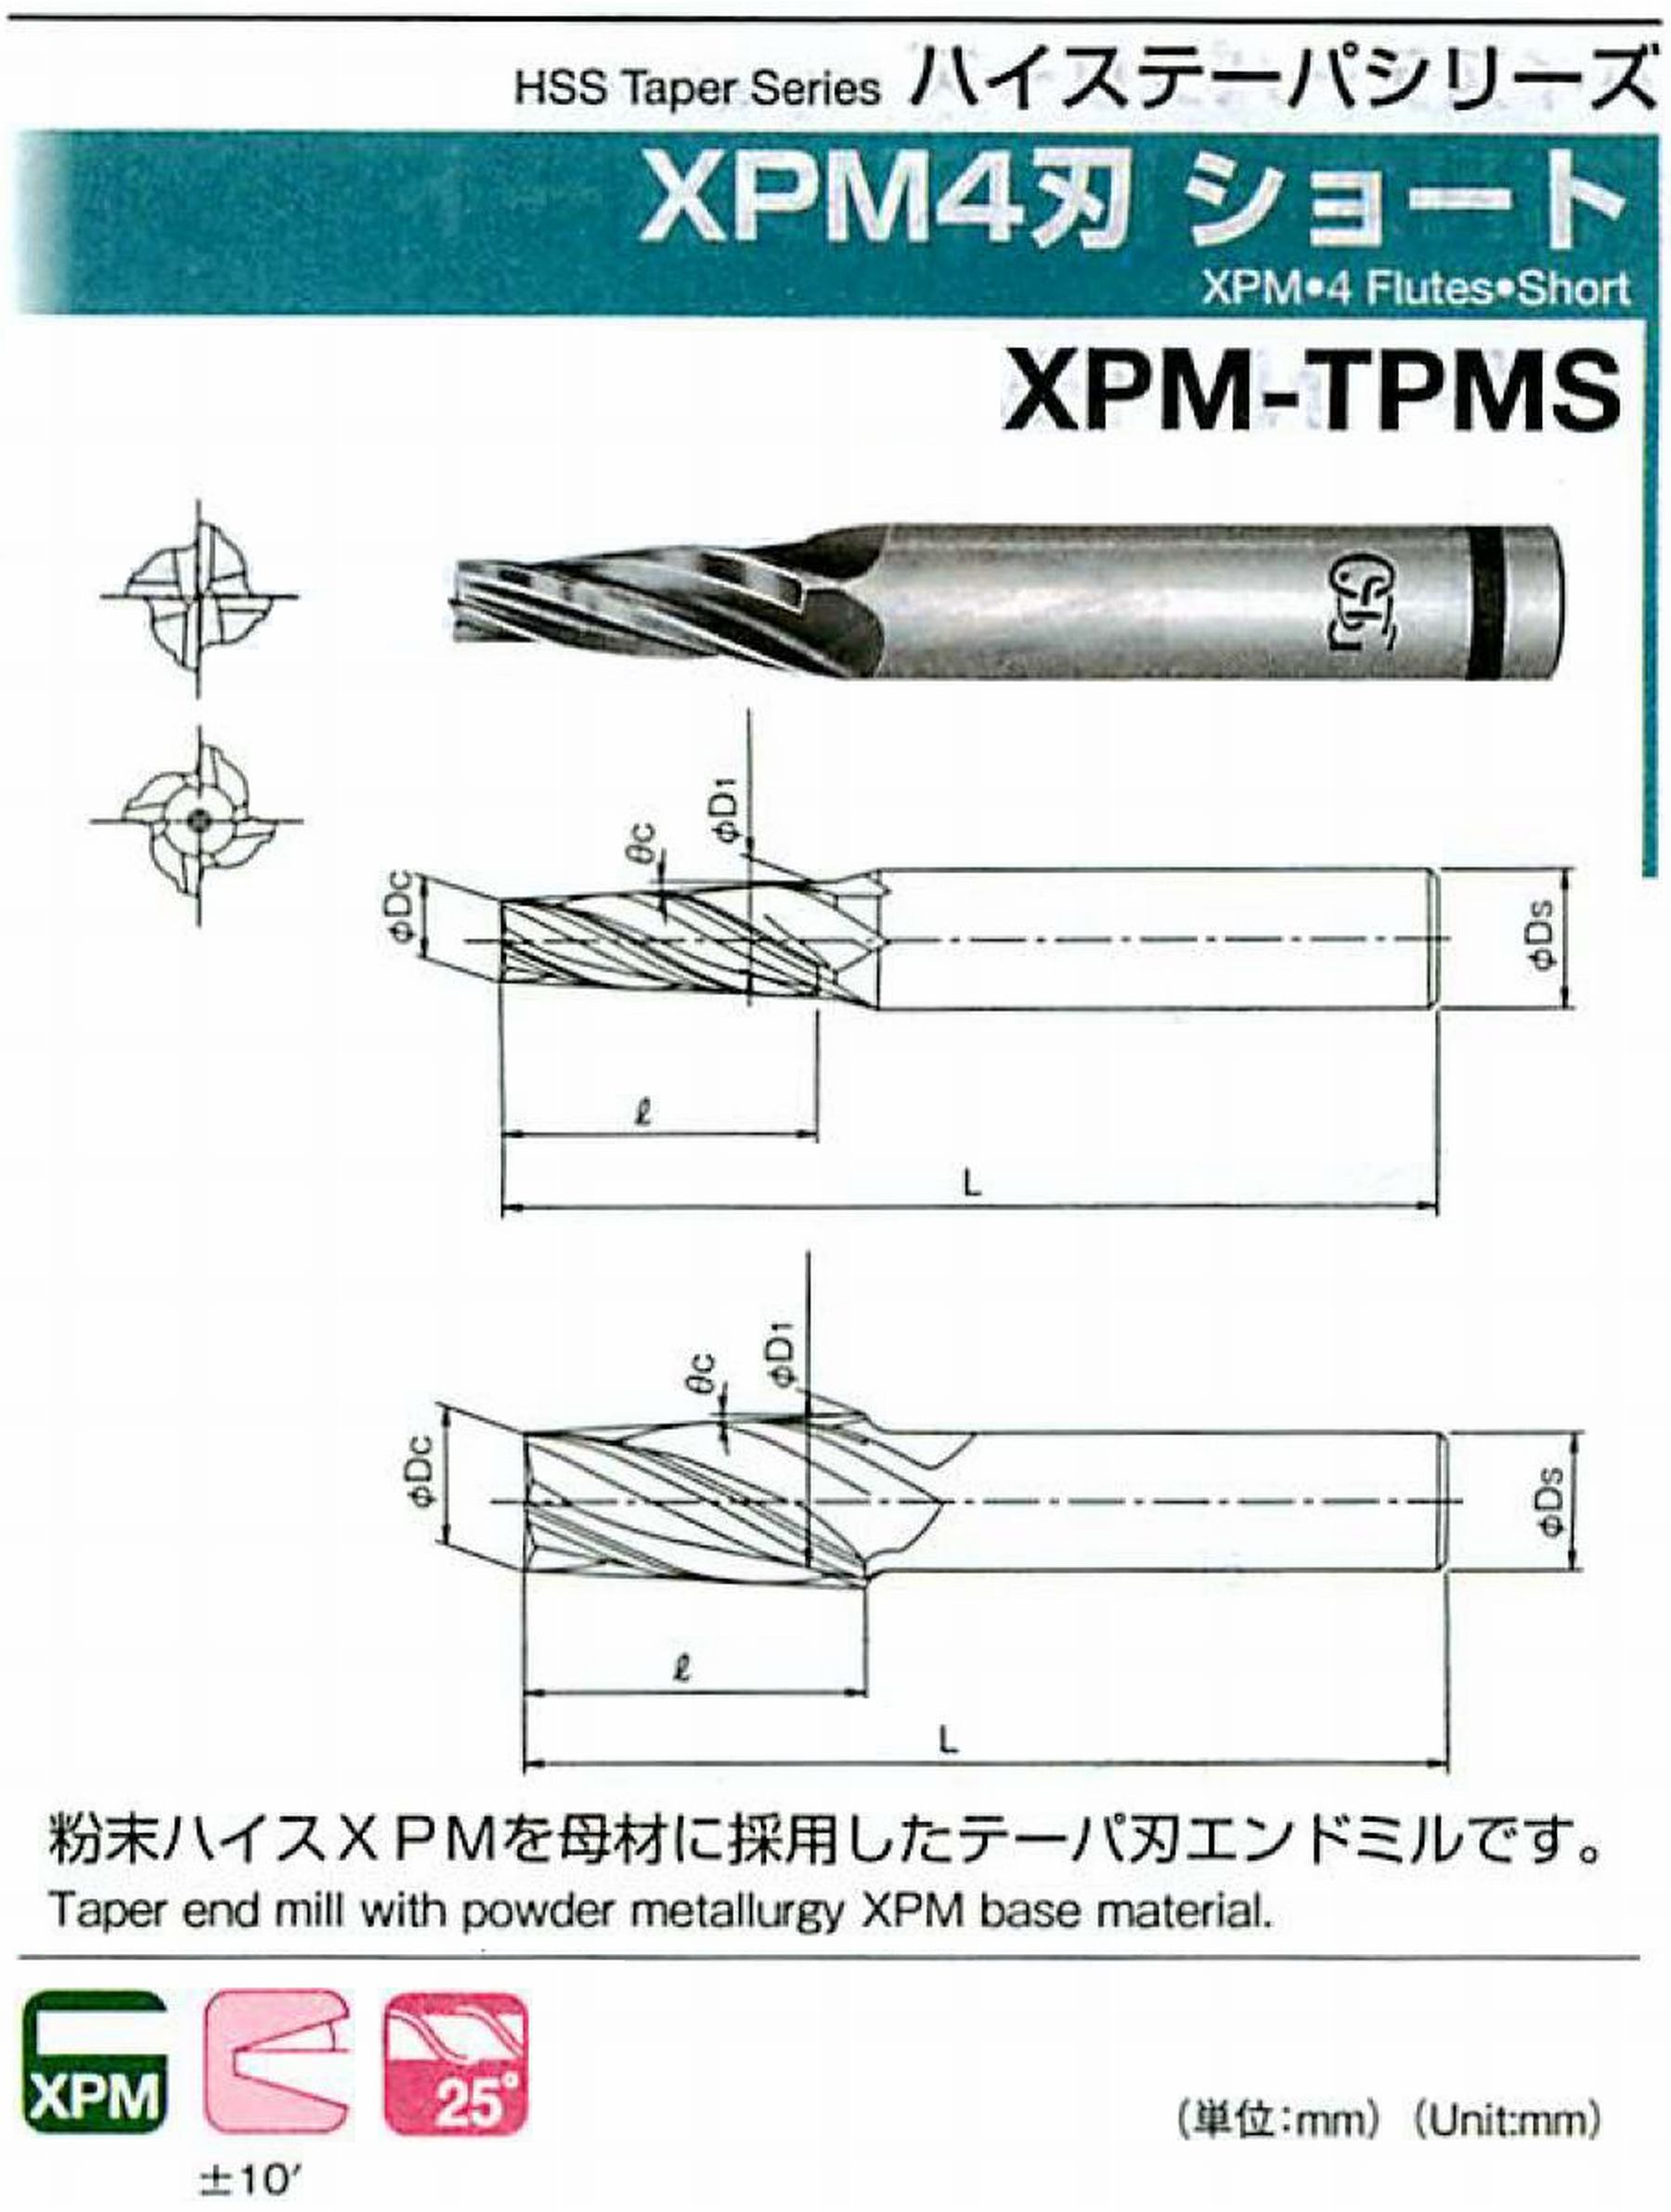 オーエスジー/OSG XPM4刃 ショート XPM-TPMS 外径×刃部テーパ半角5×2°全長69 刃長25 シャンク径8mm 大端径6.75